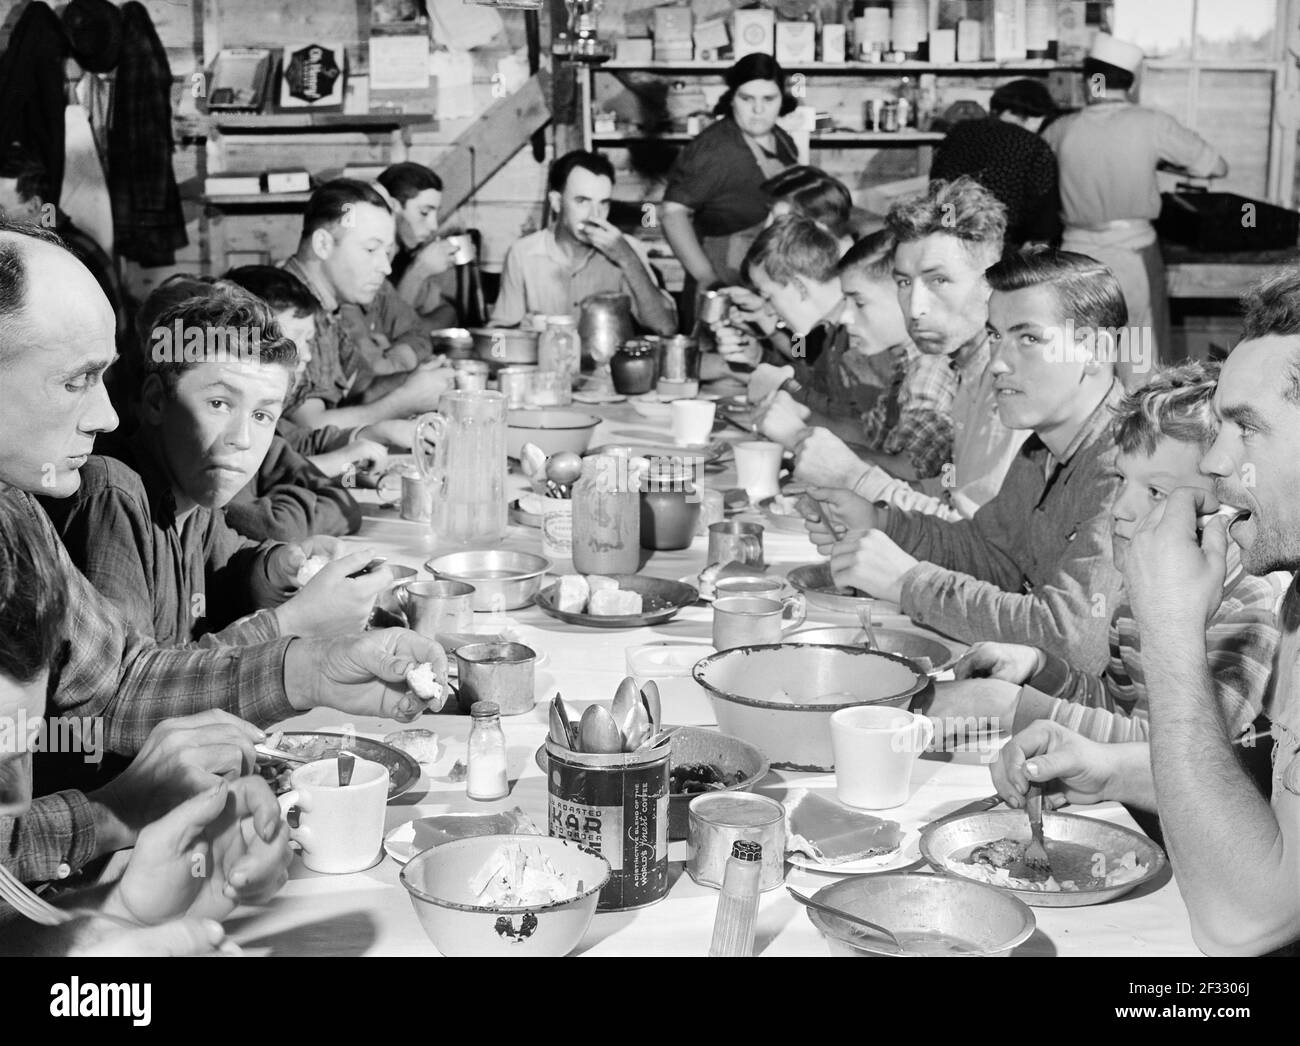 Les cueilleurs et les amateurs de terrain mangent ensemble dans une maison d'outils reconvertie pendant l'heure du déjeuner, Woodman Potato Company, près de Caribou, Maine, États-Unis, Jack Delano, Administration américaine de la sécurité agricole, octobre 1940 Banque D'Images